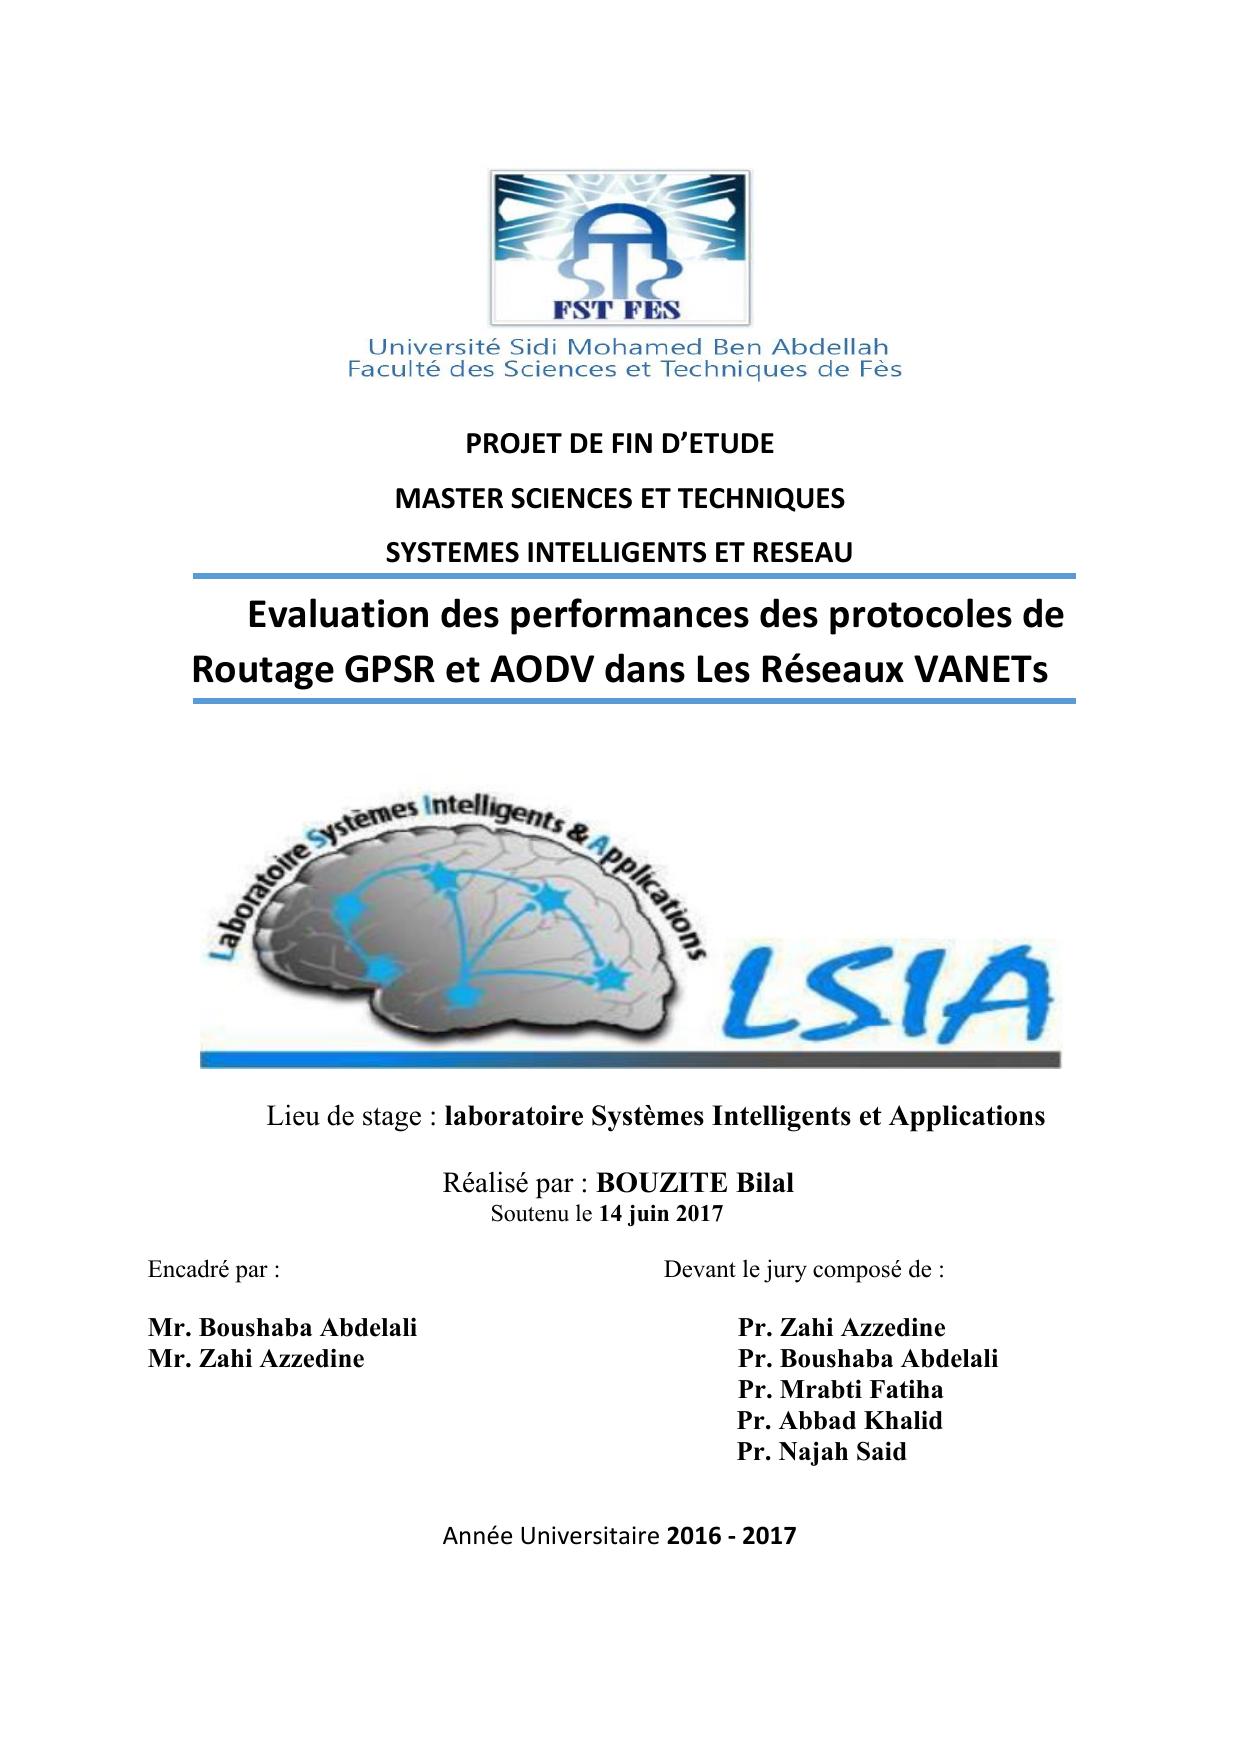 Evaluation des performances des protocoles de Routage GPSR et AODV dans Les Réseaux VANETs